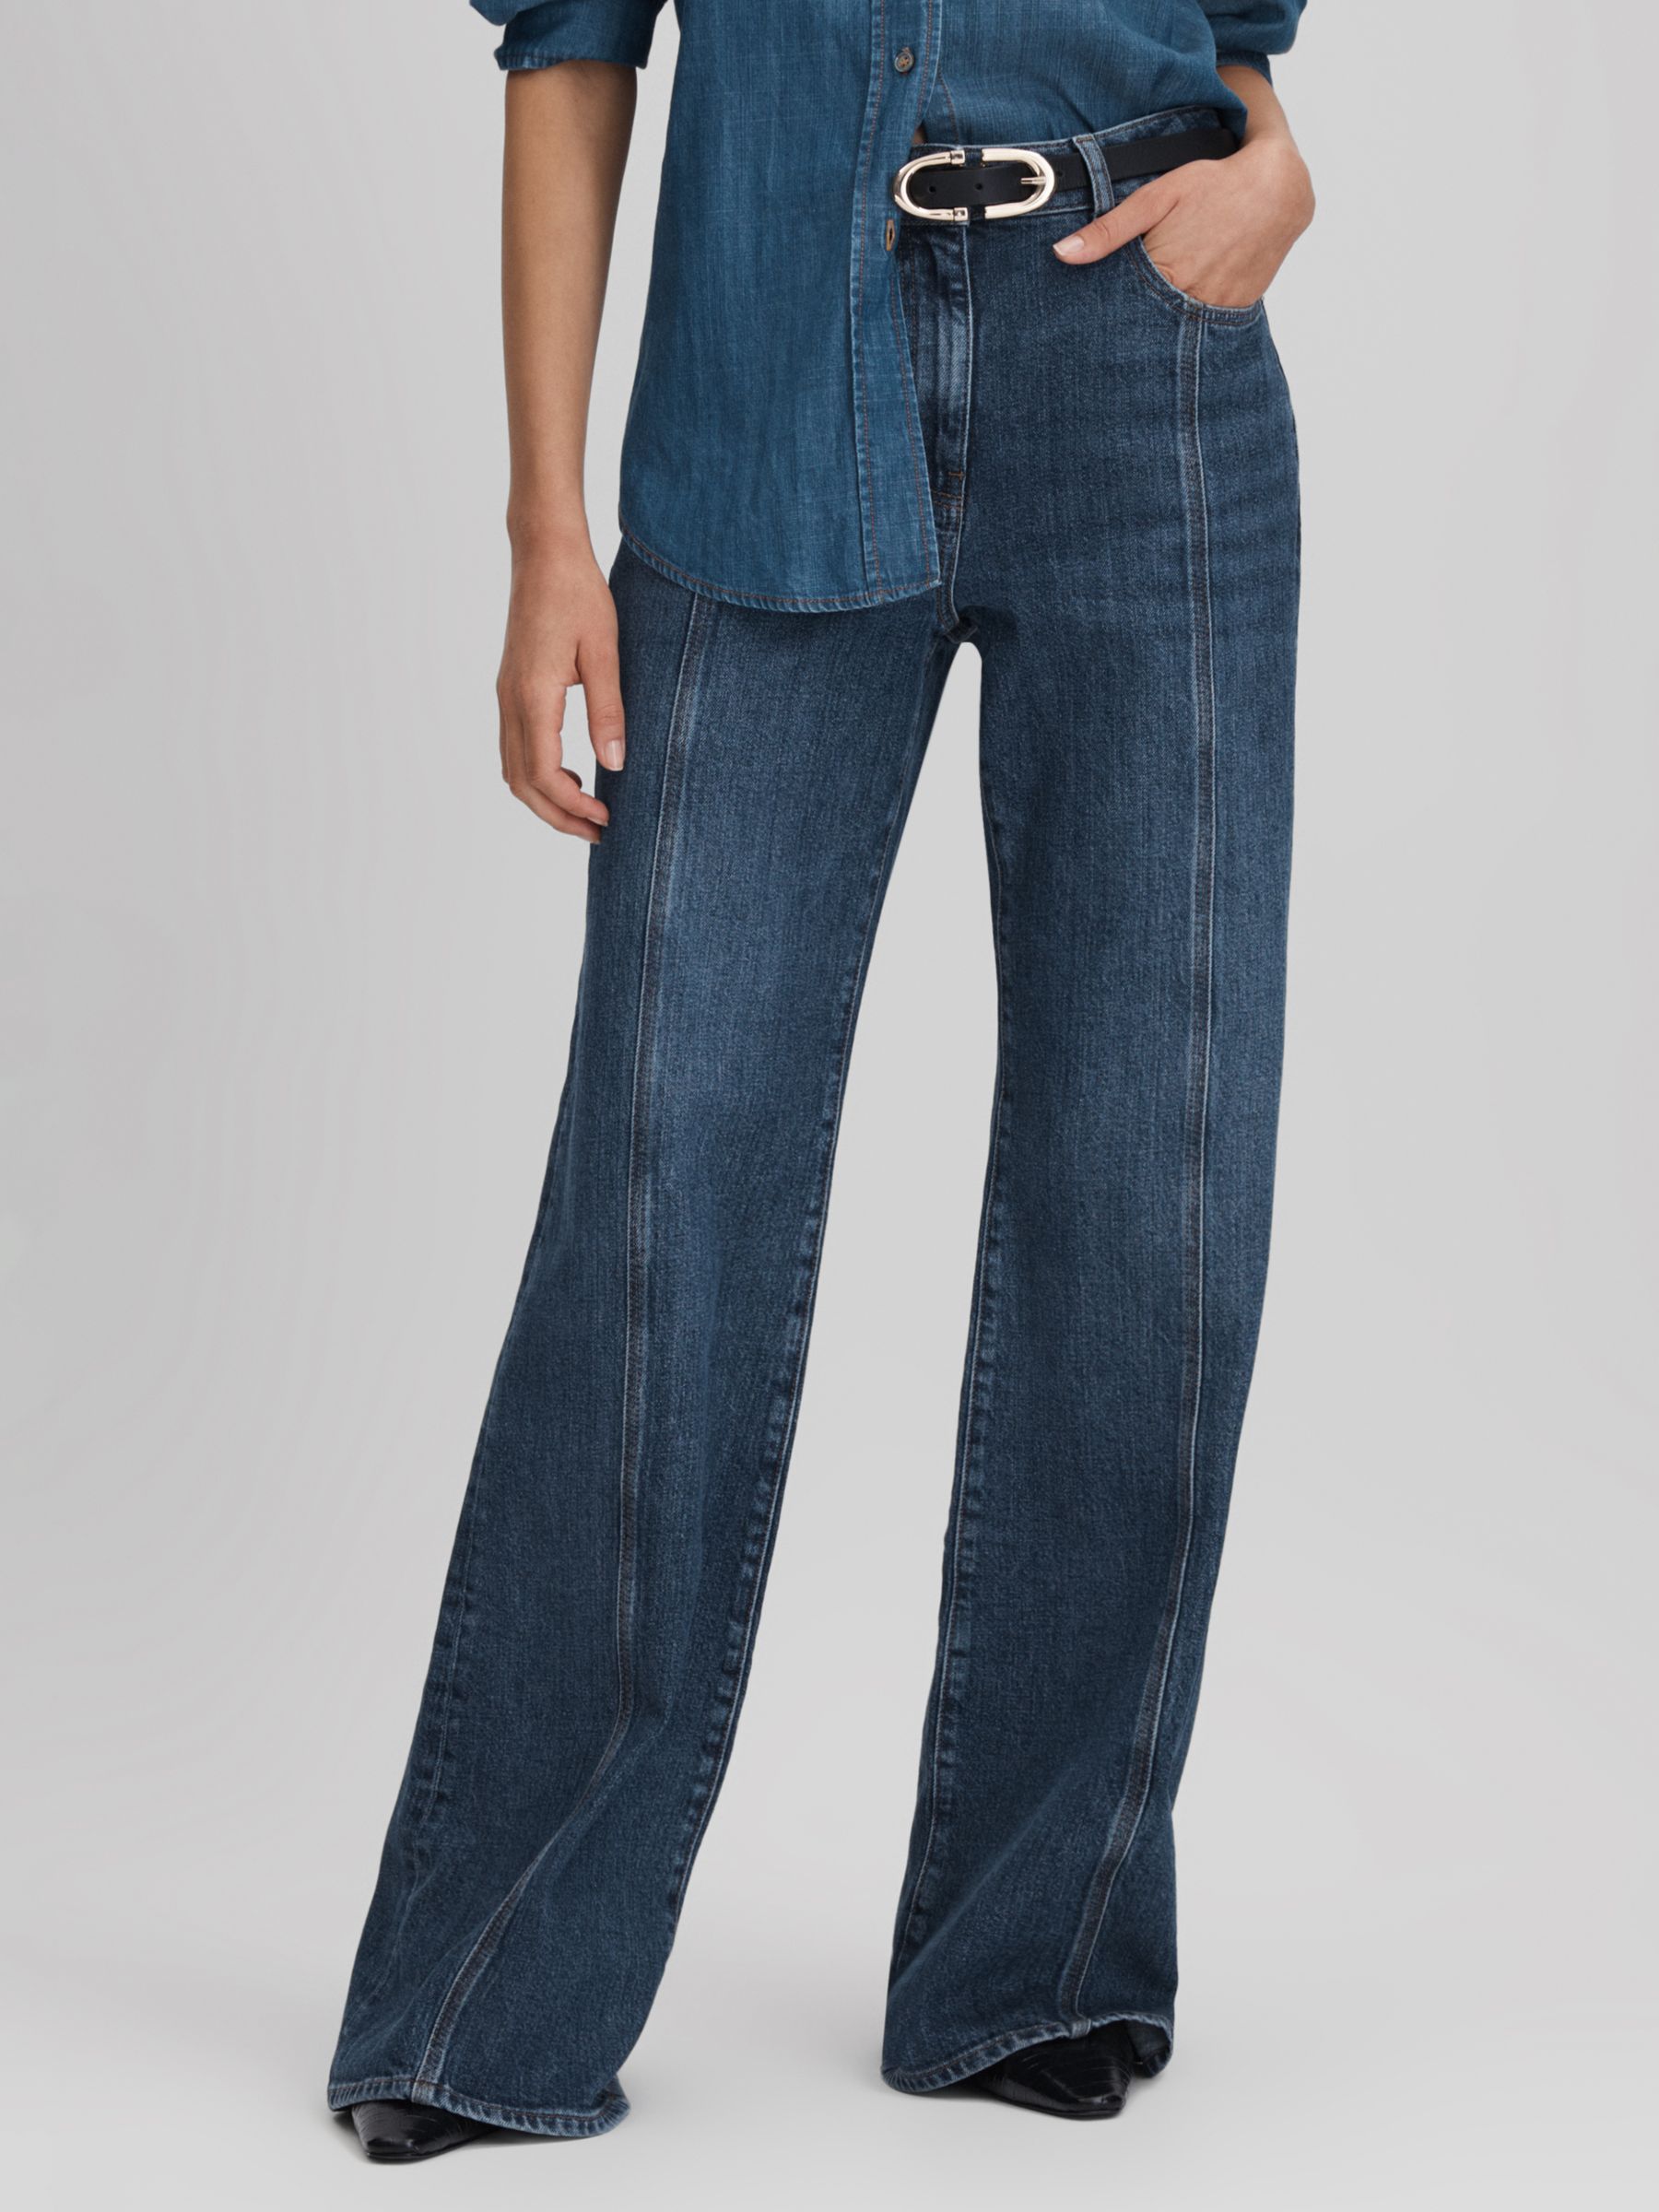 Reiss Juniper Flared Jeans, Mid Blue, 28R